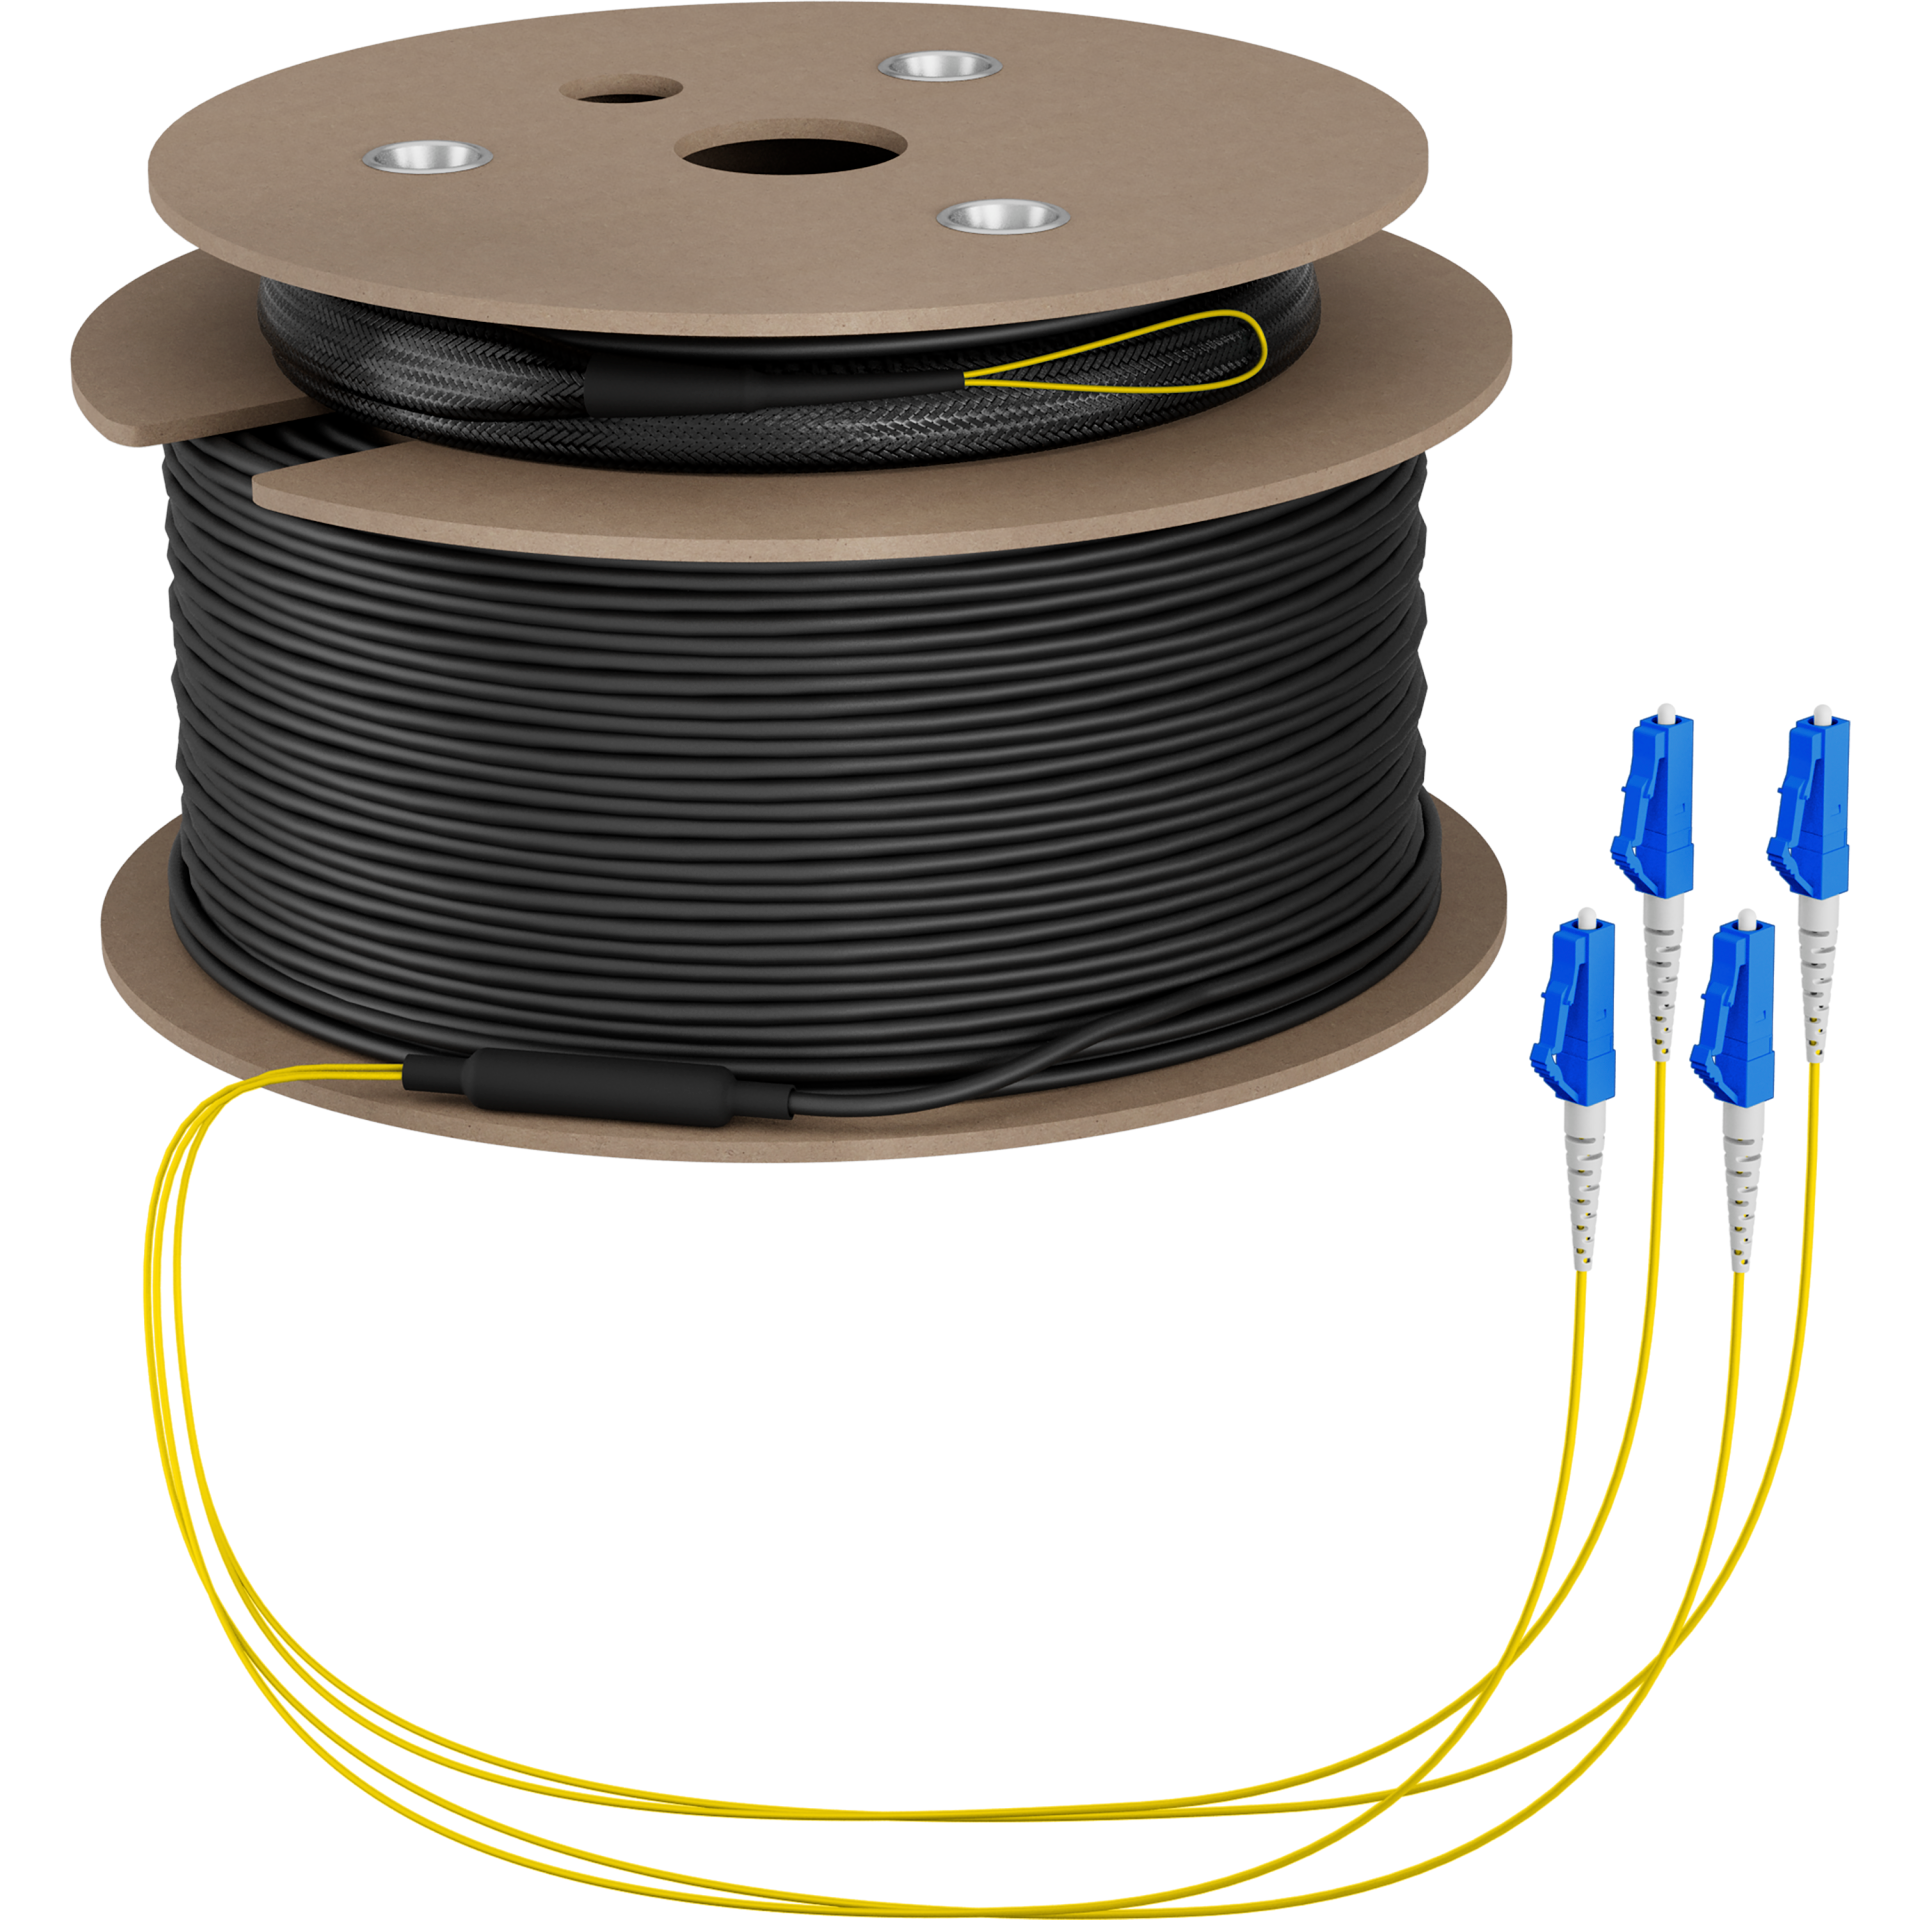 Trunk cable U-DQ(ZN)BH OS2 4E (1x4) LC-LC,160m Dca LSZH G675A1